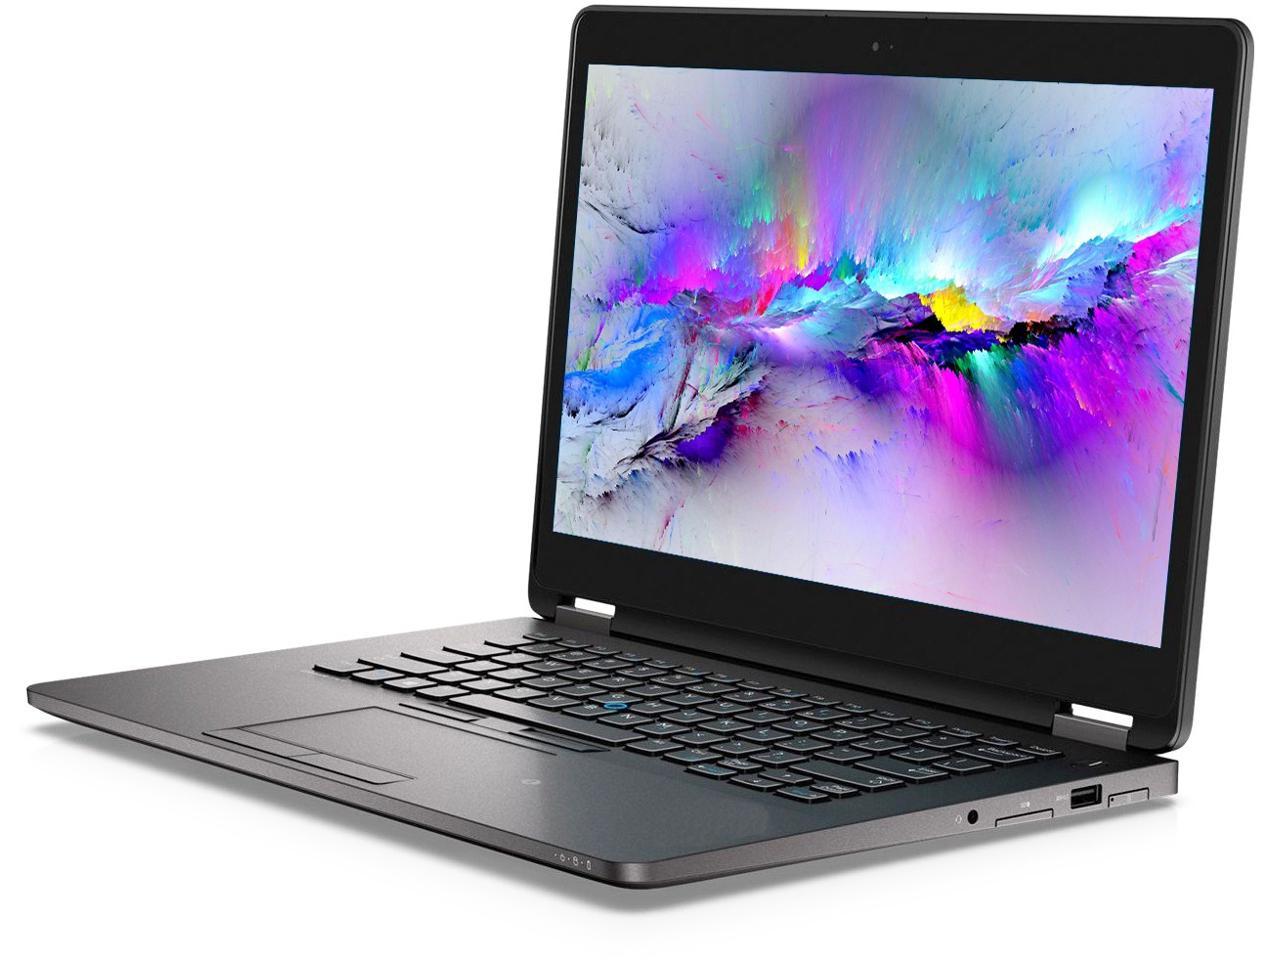 Dell Latitude E7470 14" Laptop, Intel Core i7 6600U 2.6Ghz, 8GB DDR4, 1TB M.2 SSD, 1080p FHD, HDMI, Webcam, Windows 10